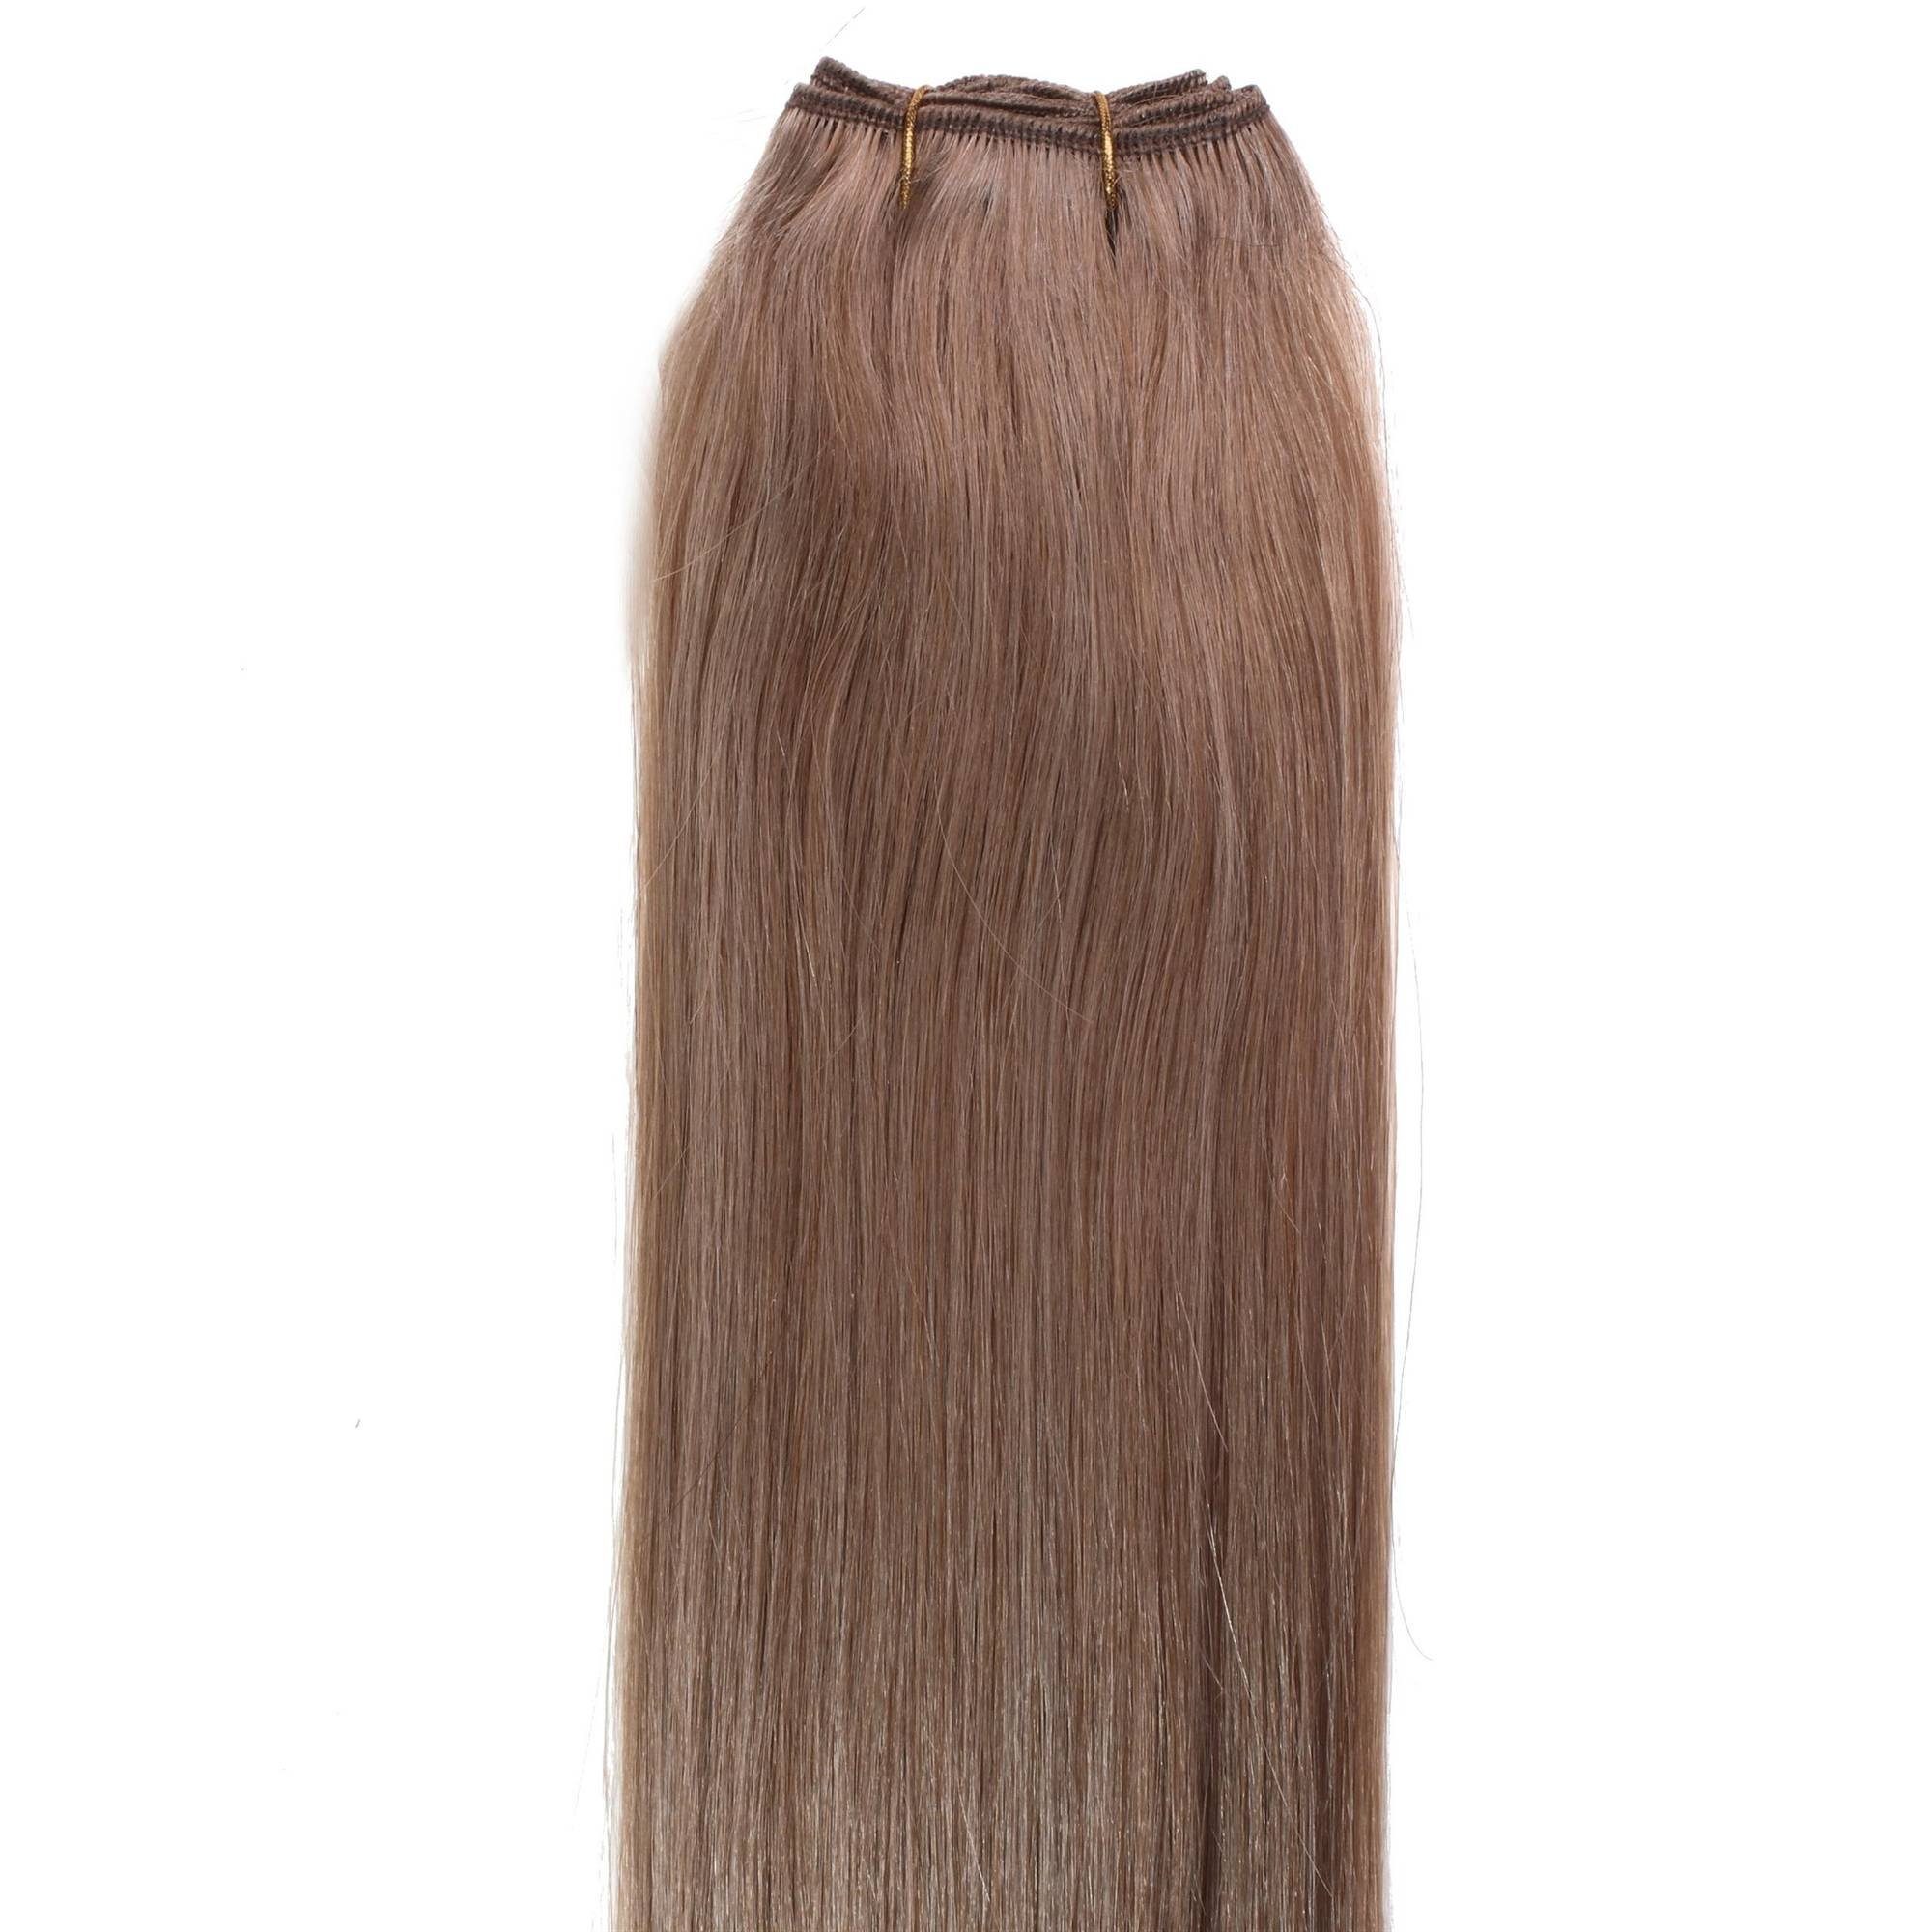 Echthaar-Extension Glatte Gold-Asch #10/31 40cm Echthaartresse Hell-Lichtblond hair2heart